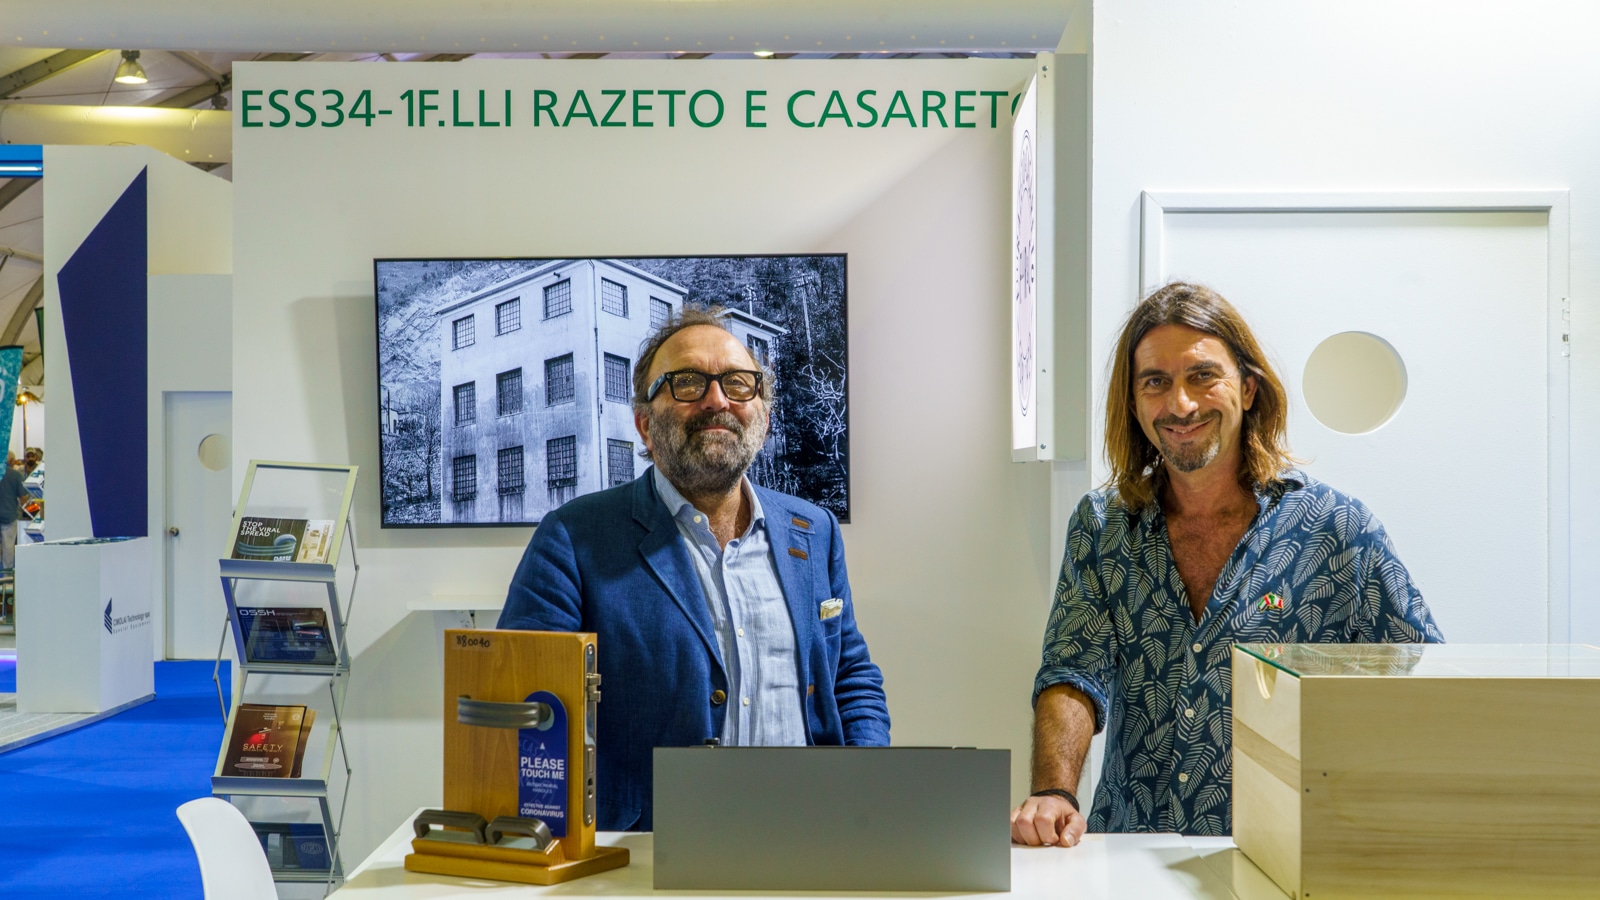 F.lli Razeto & Casareto al DIBS con la nuova maniglia Quadra5Led: elegante e sicura